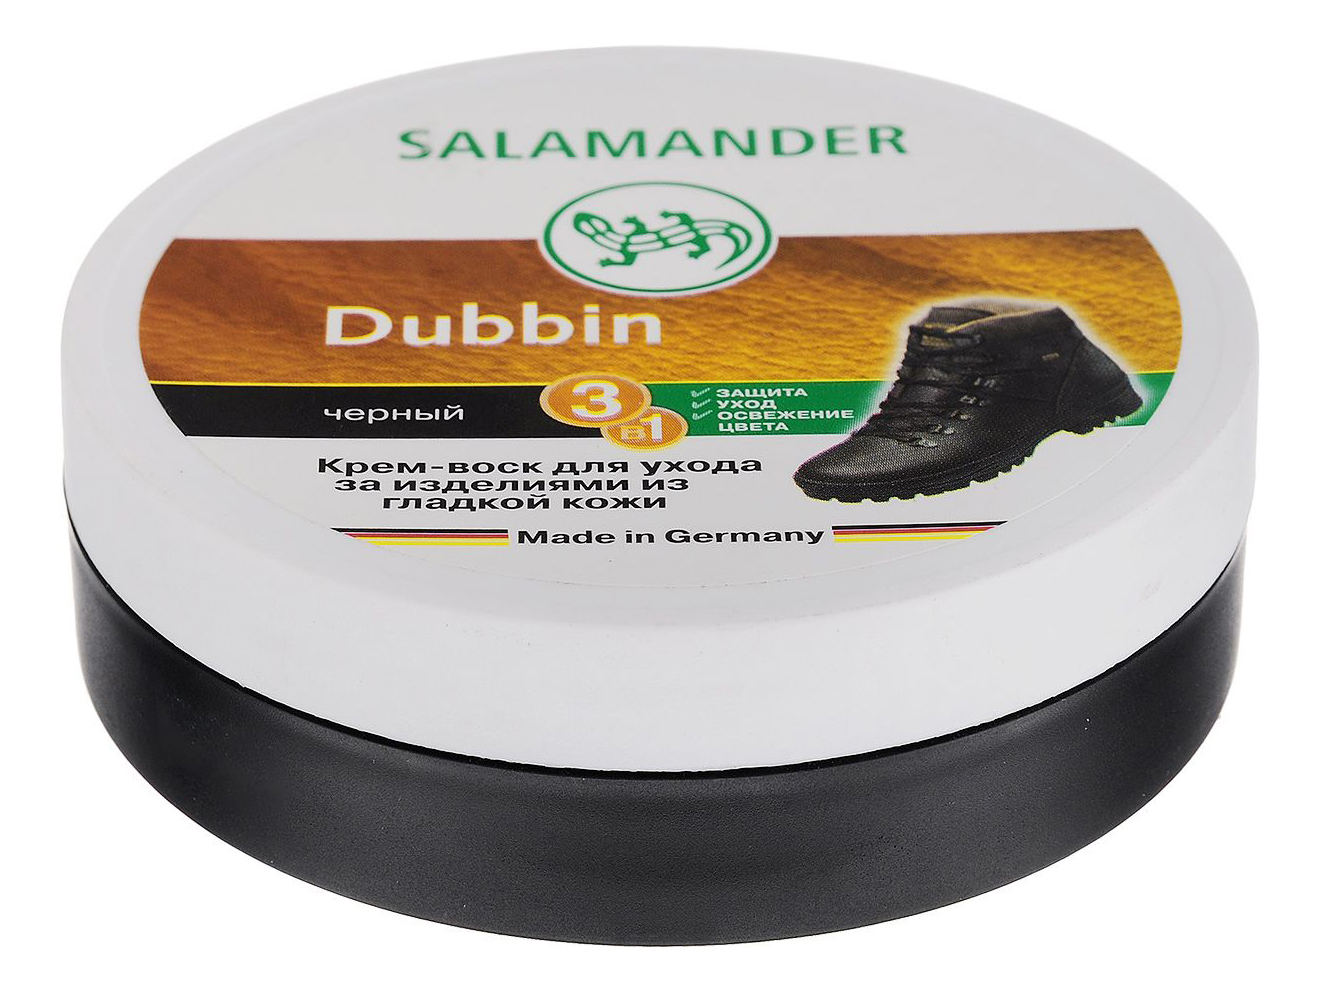 Лучшие средства для обуви. Крем-воск Salamander Dubbin чёрный, 100мл. Крем для обуви саламандер Дуббин. Воск для обуви саламандер. Обувной крем саламандер черный.